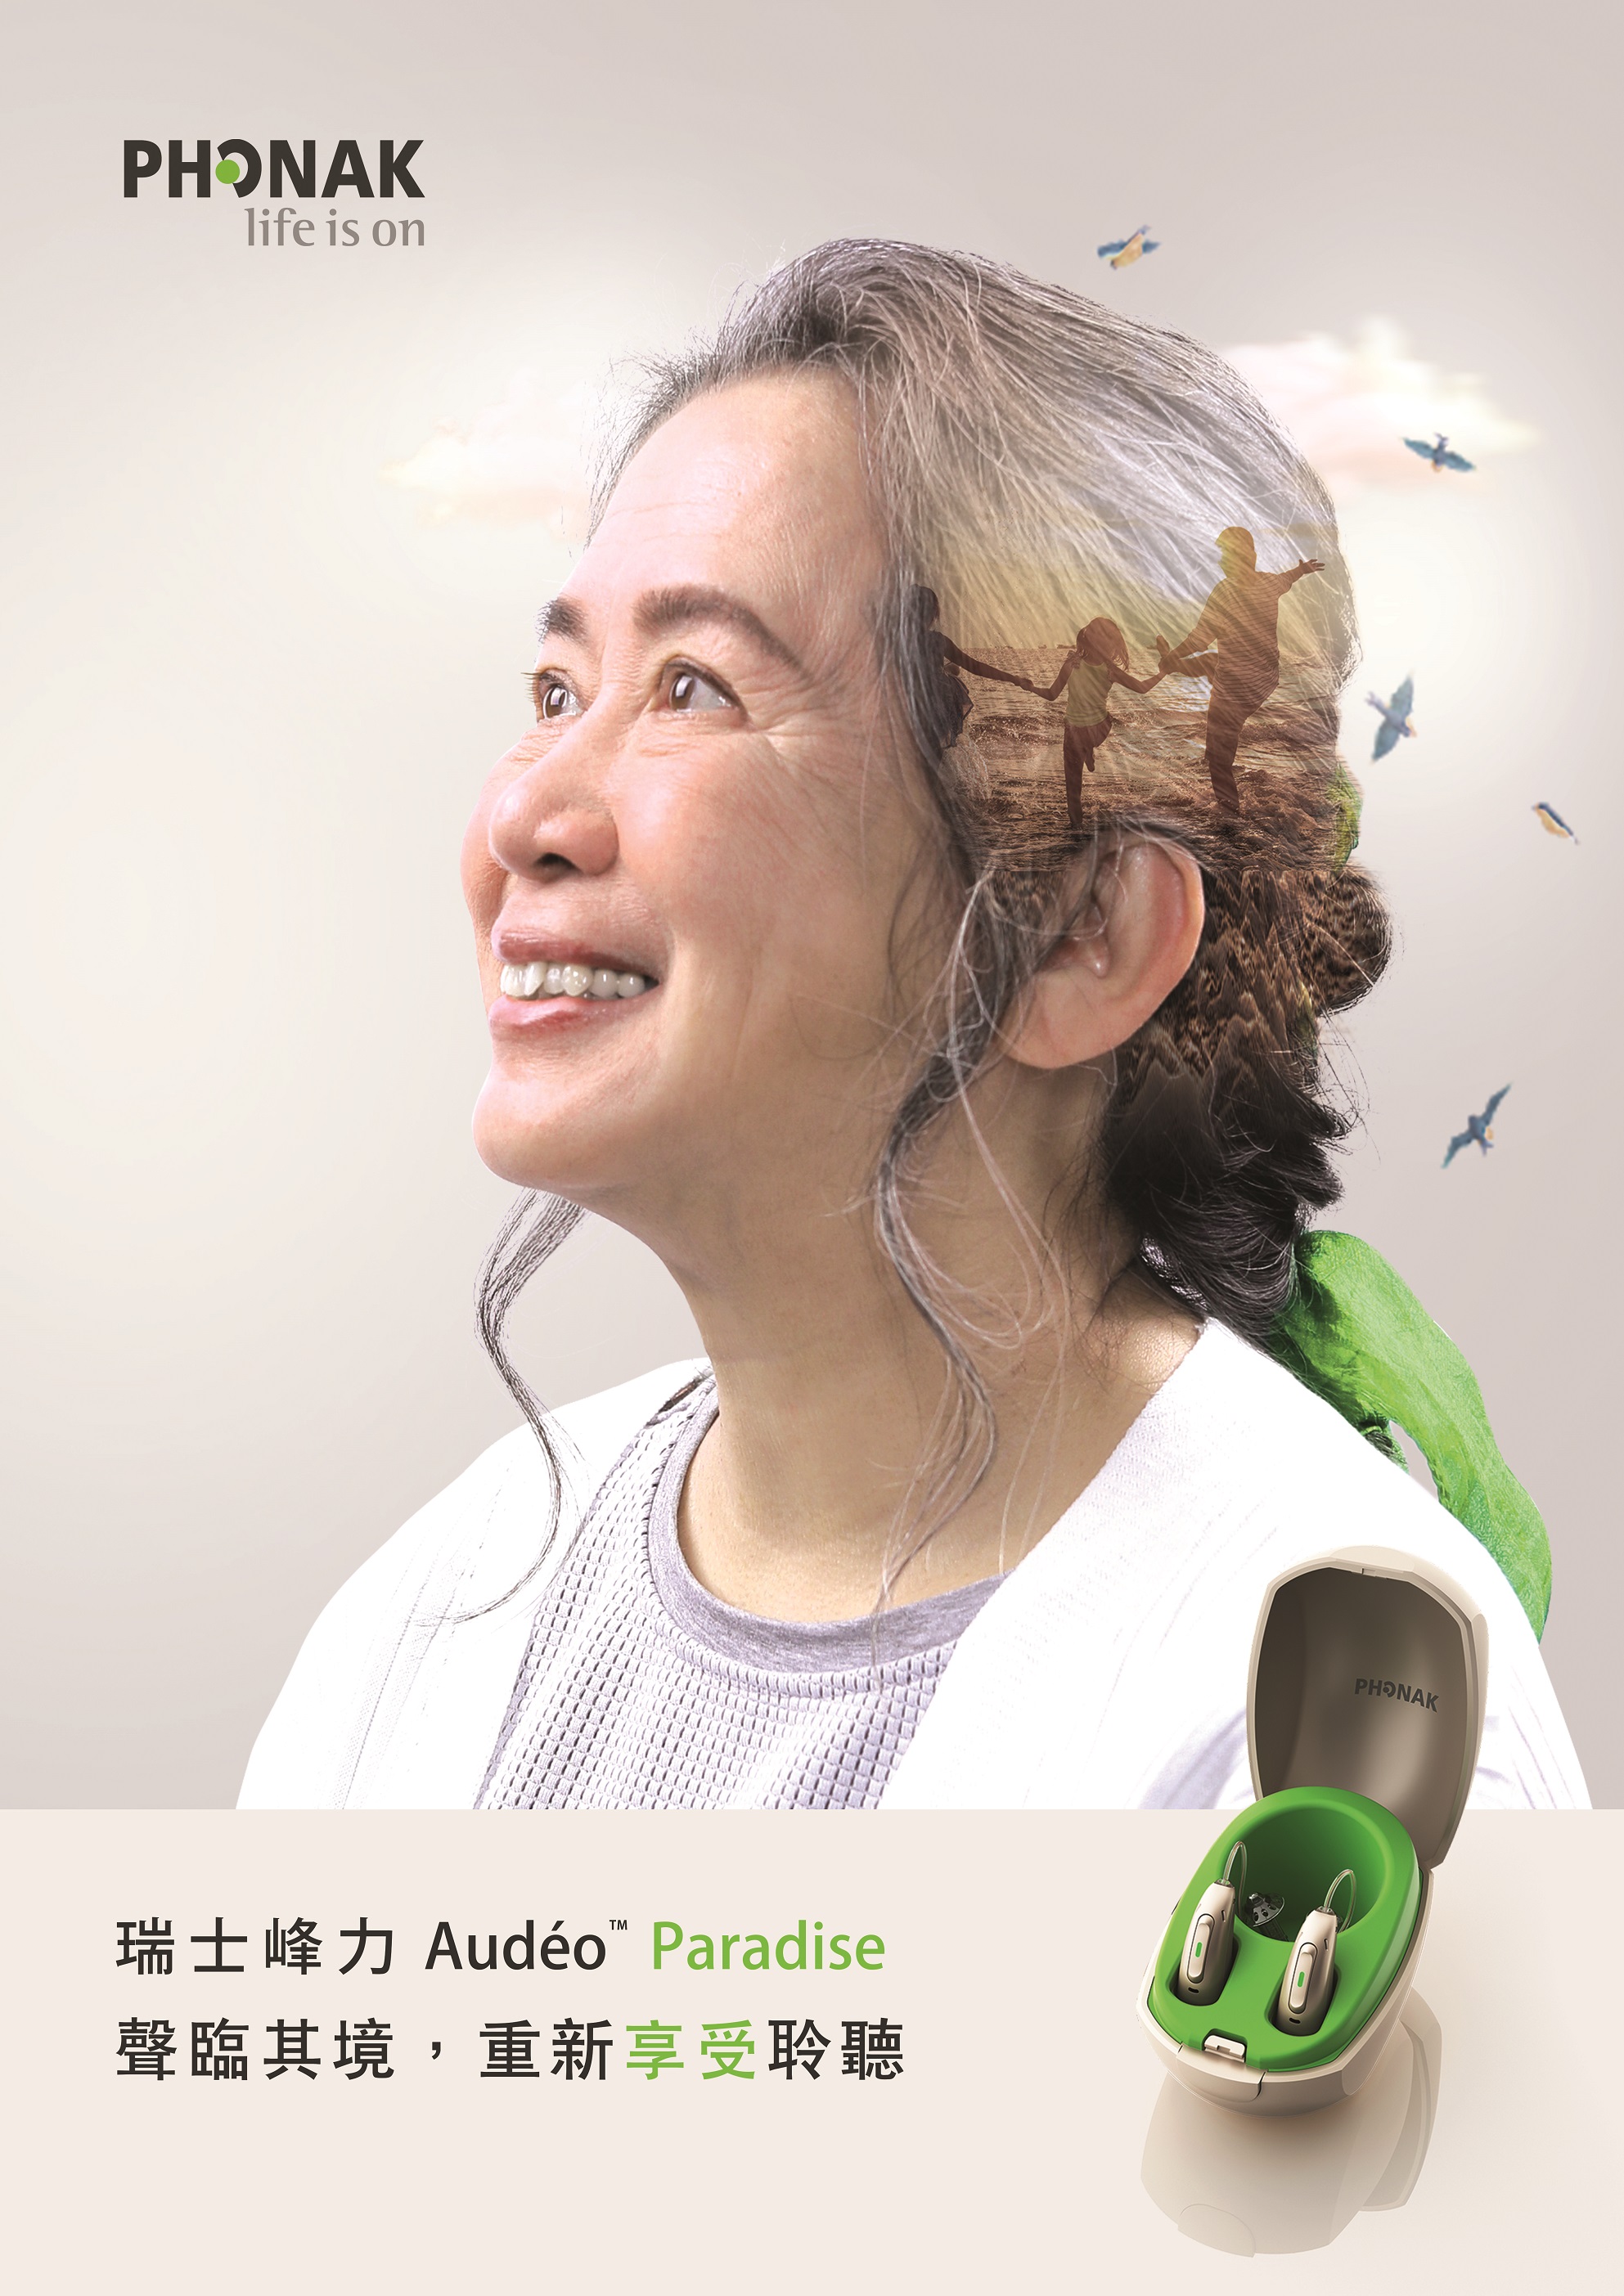 峰力 Audeo Paradise 智能生活型助聽器2.jpg